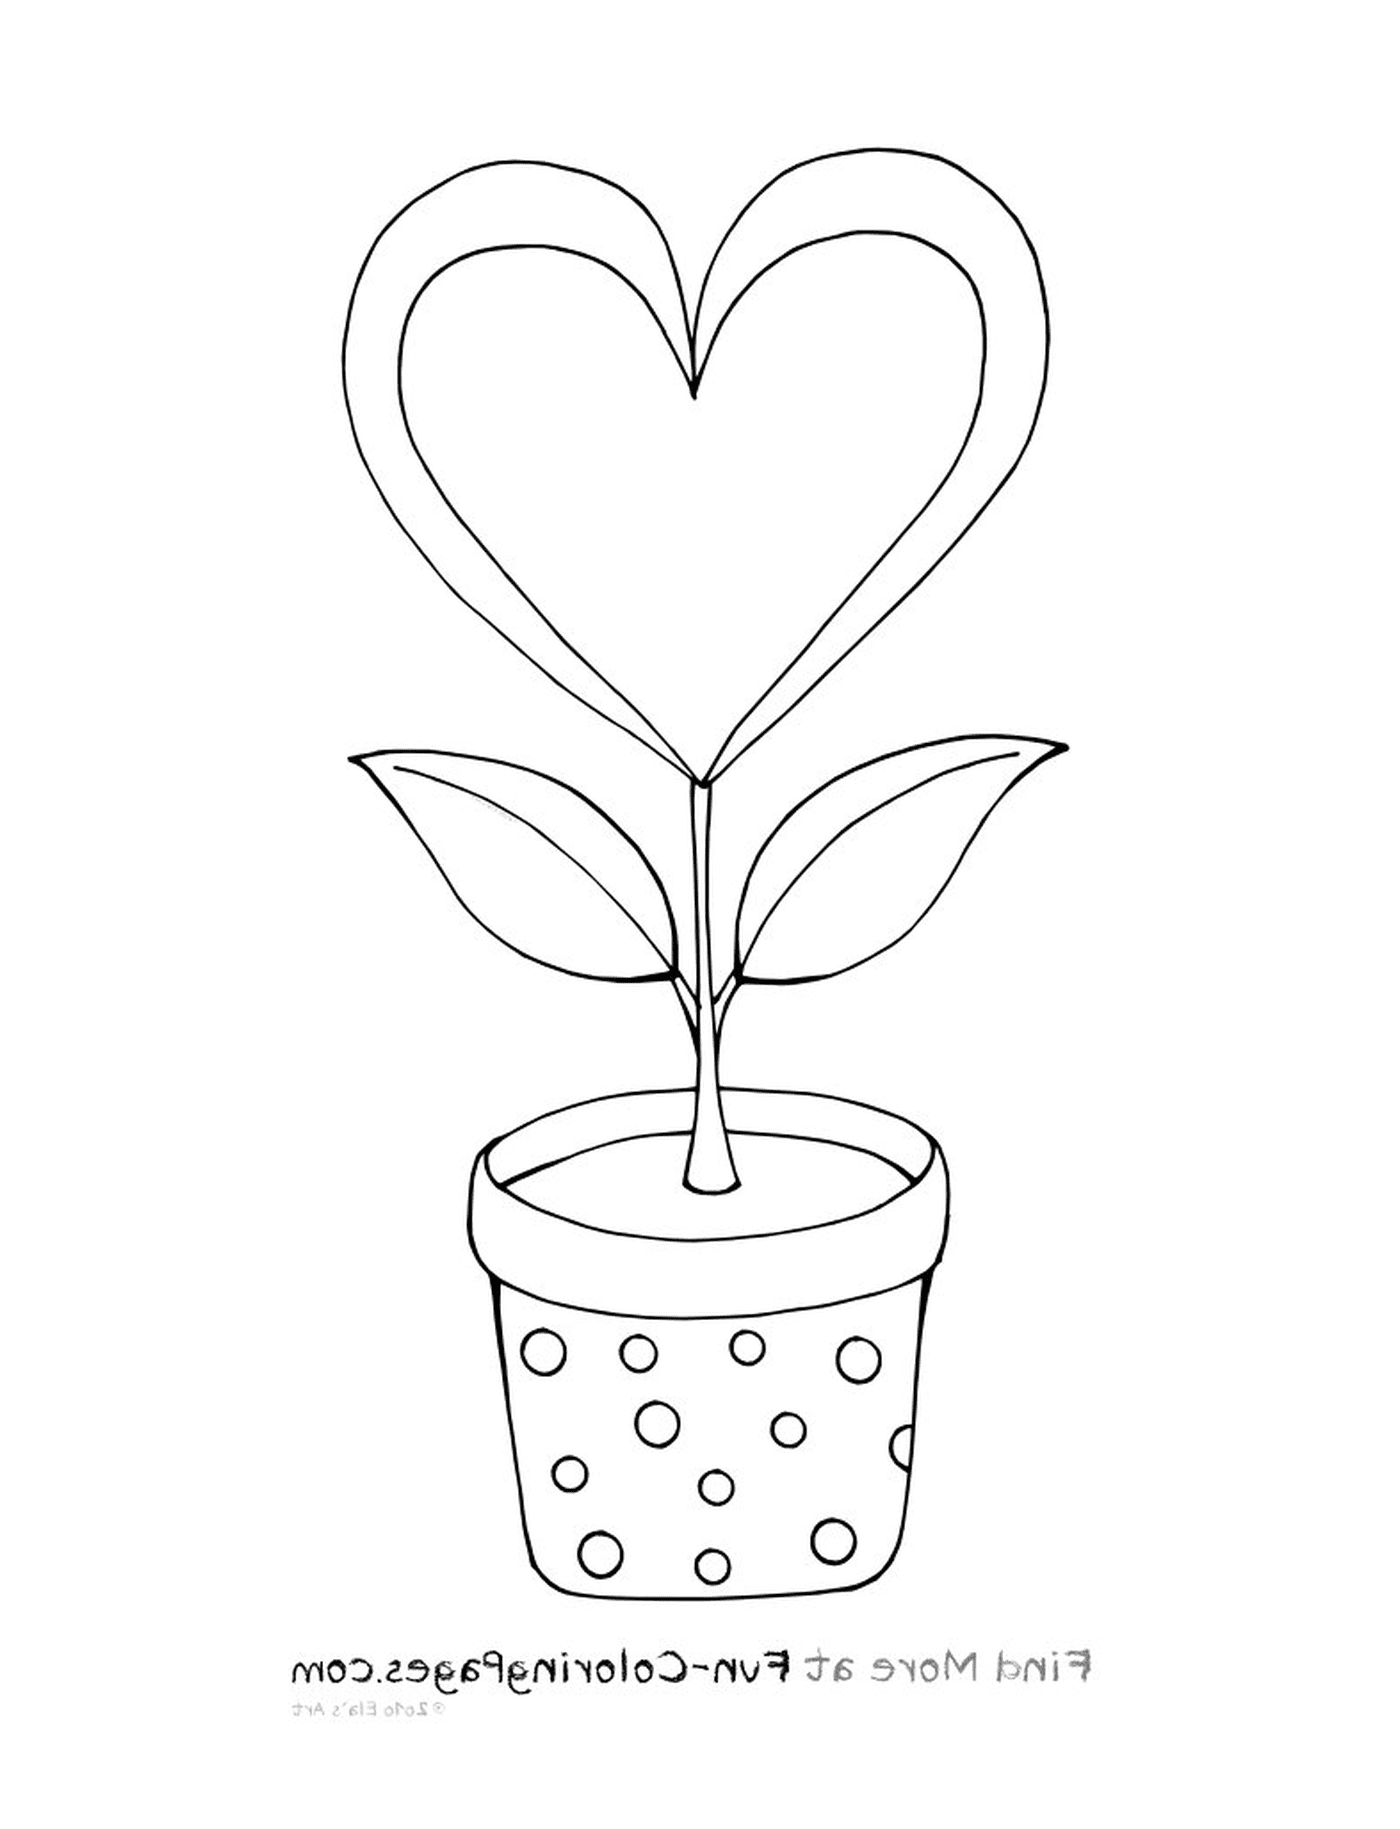  Uma planta em um pote 